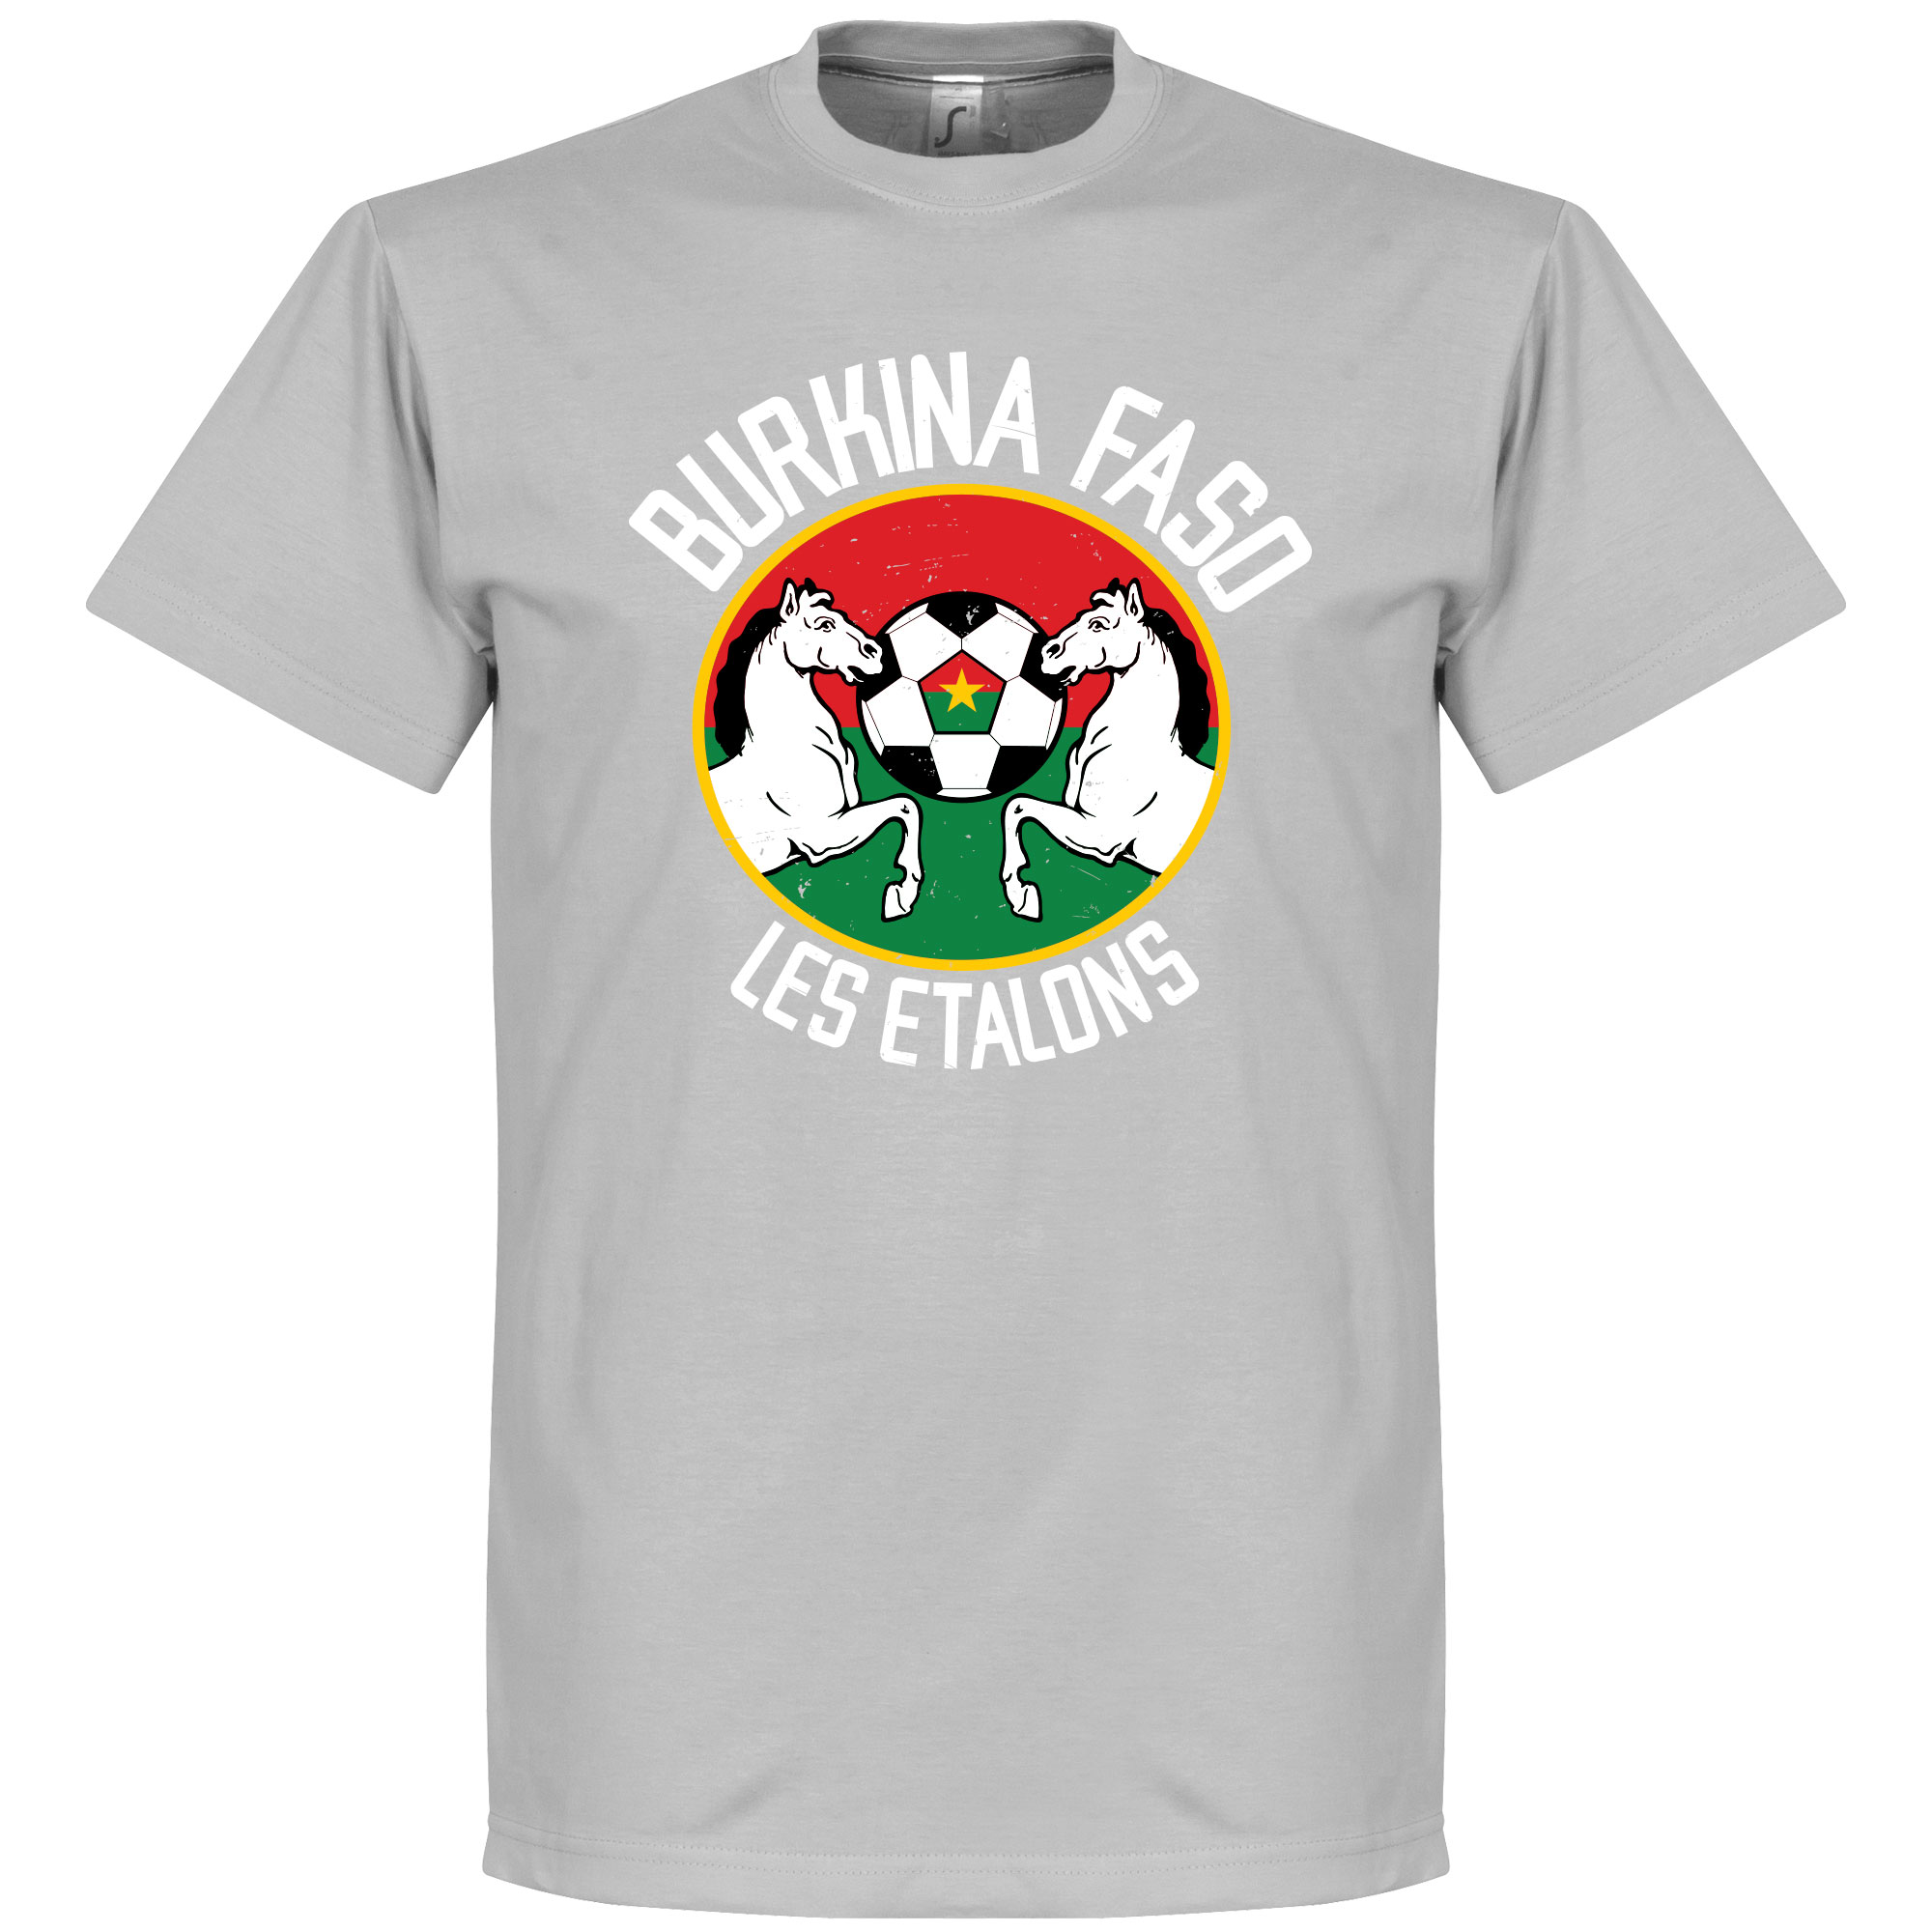 Burkina Faso Les Etalons T-Shirt L